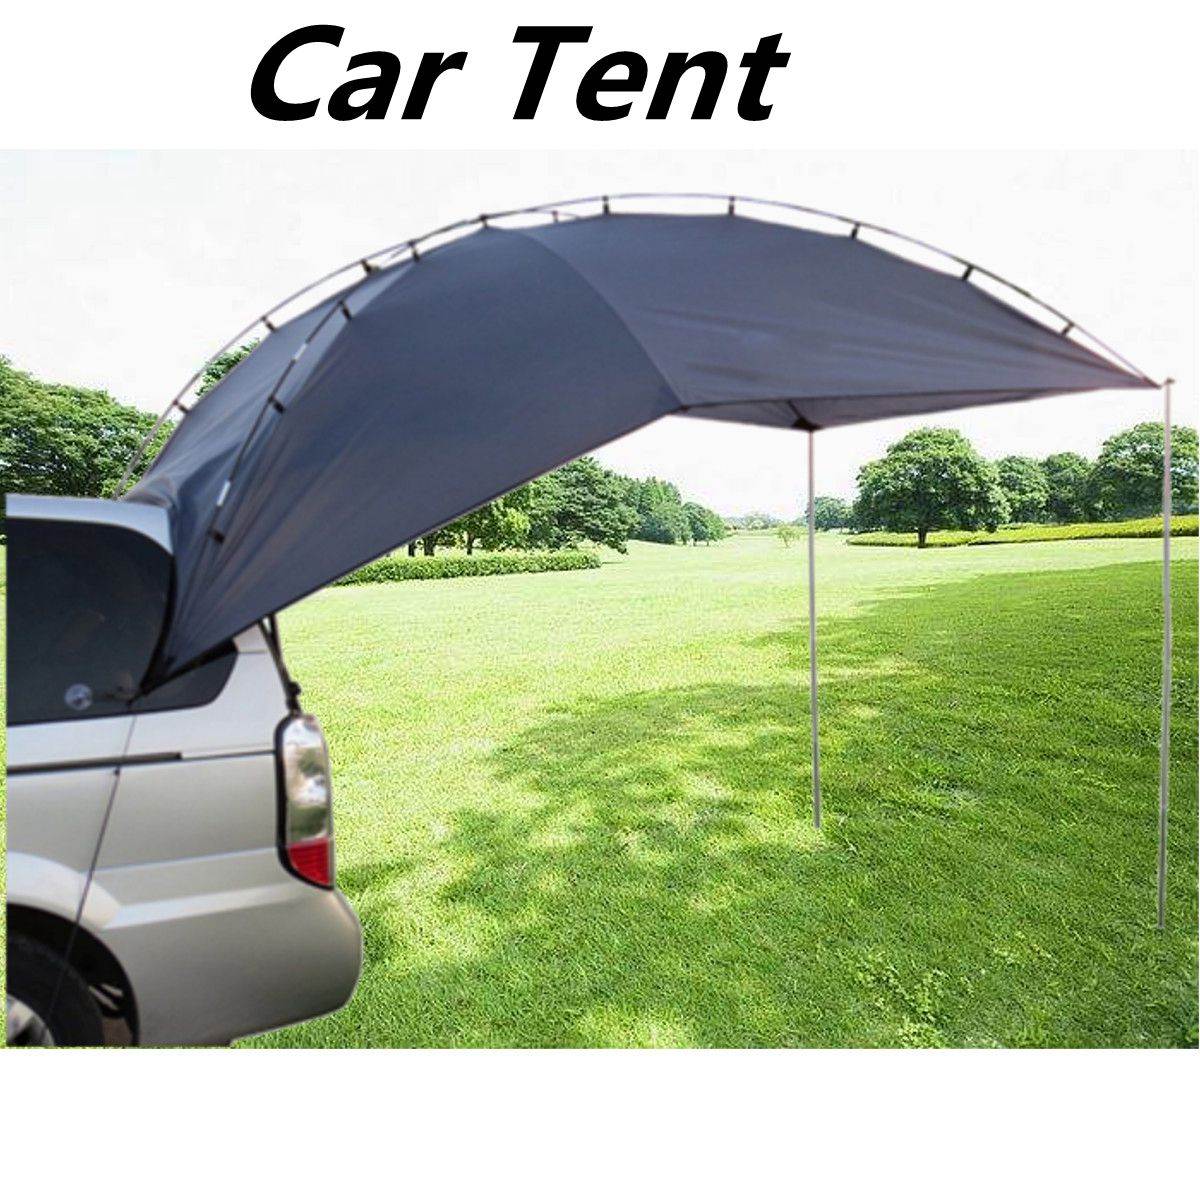 car tent